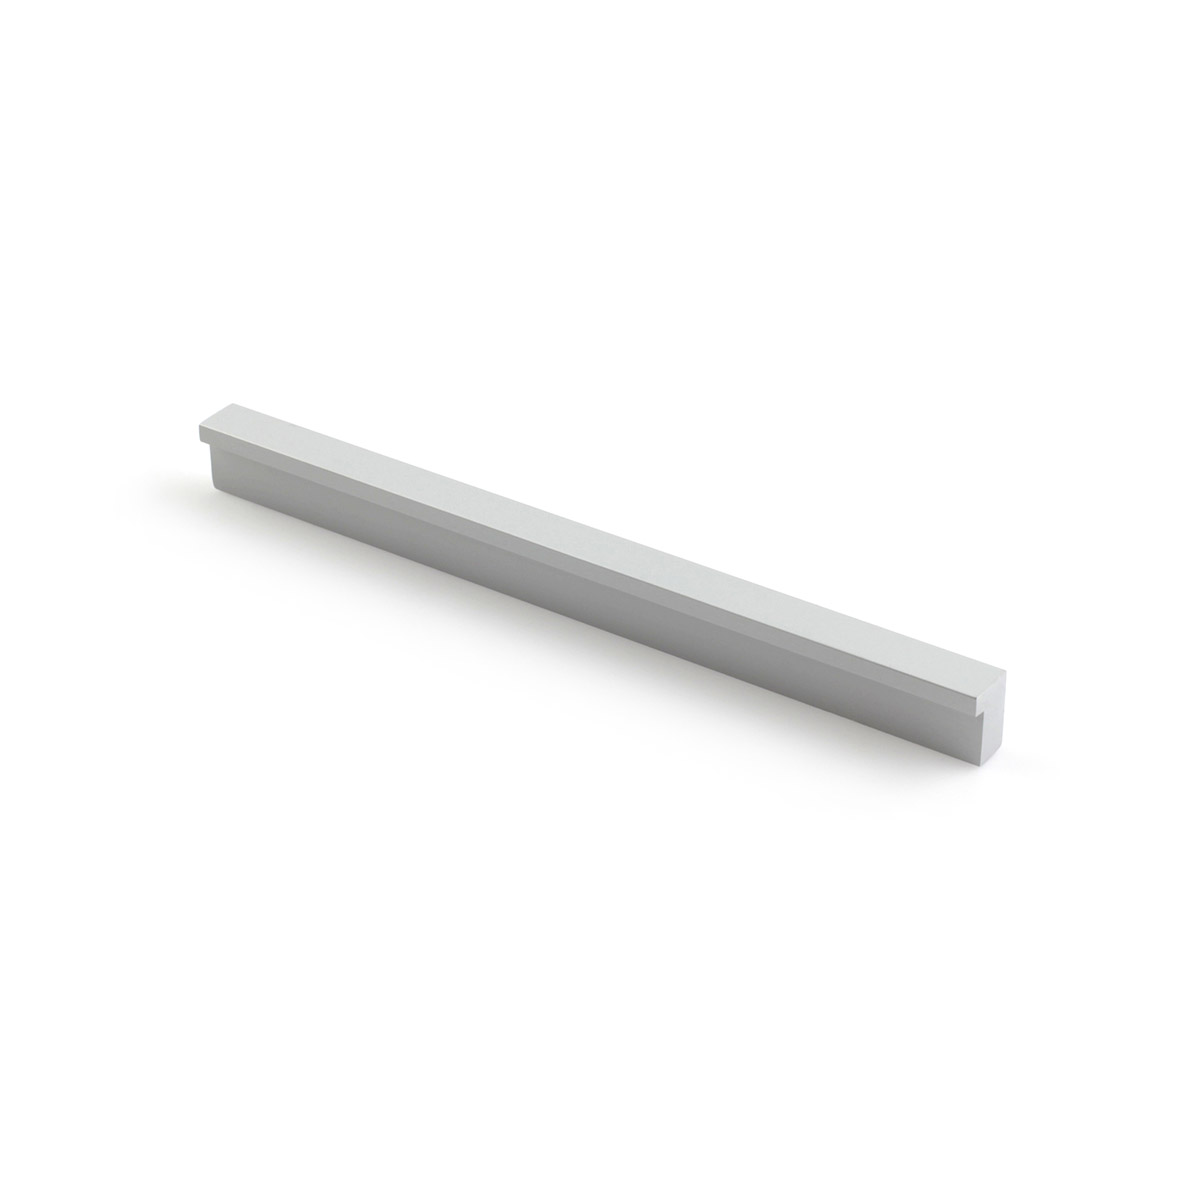 Asa de aluminio con acabado anodizado mate, dimensiones:190x12x18mm y entrepuntos:160mm